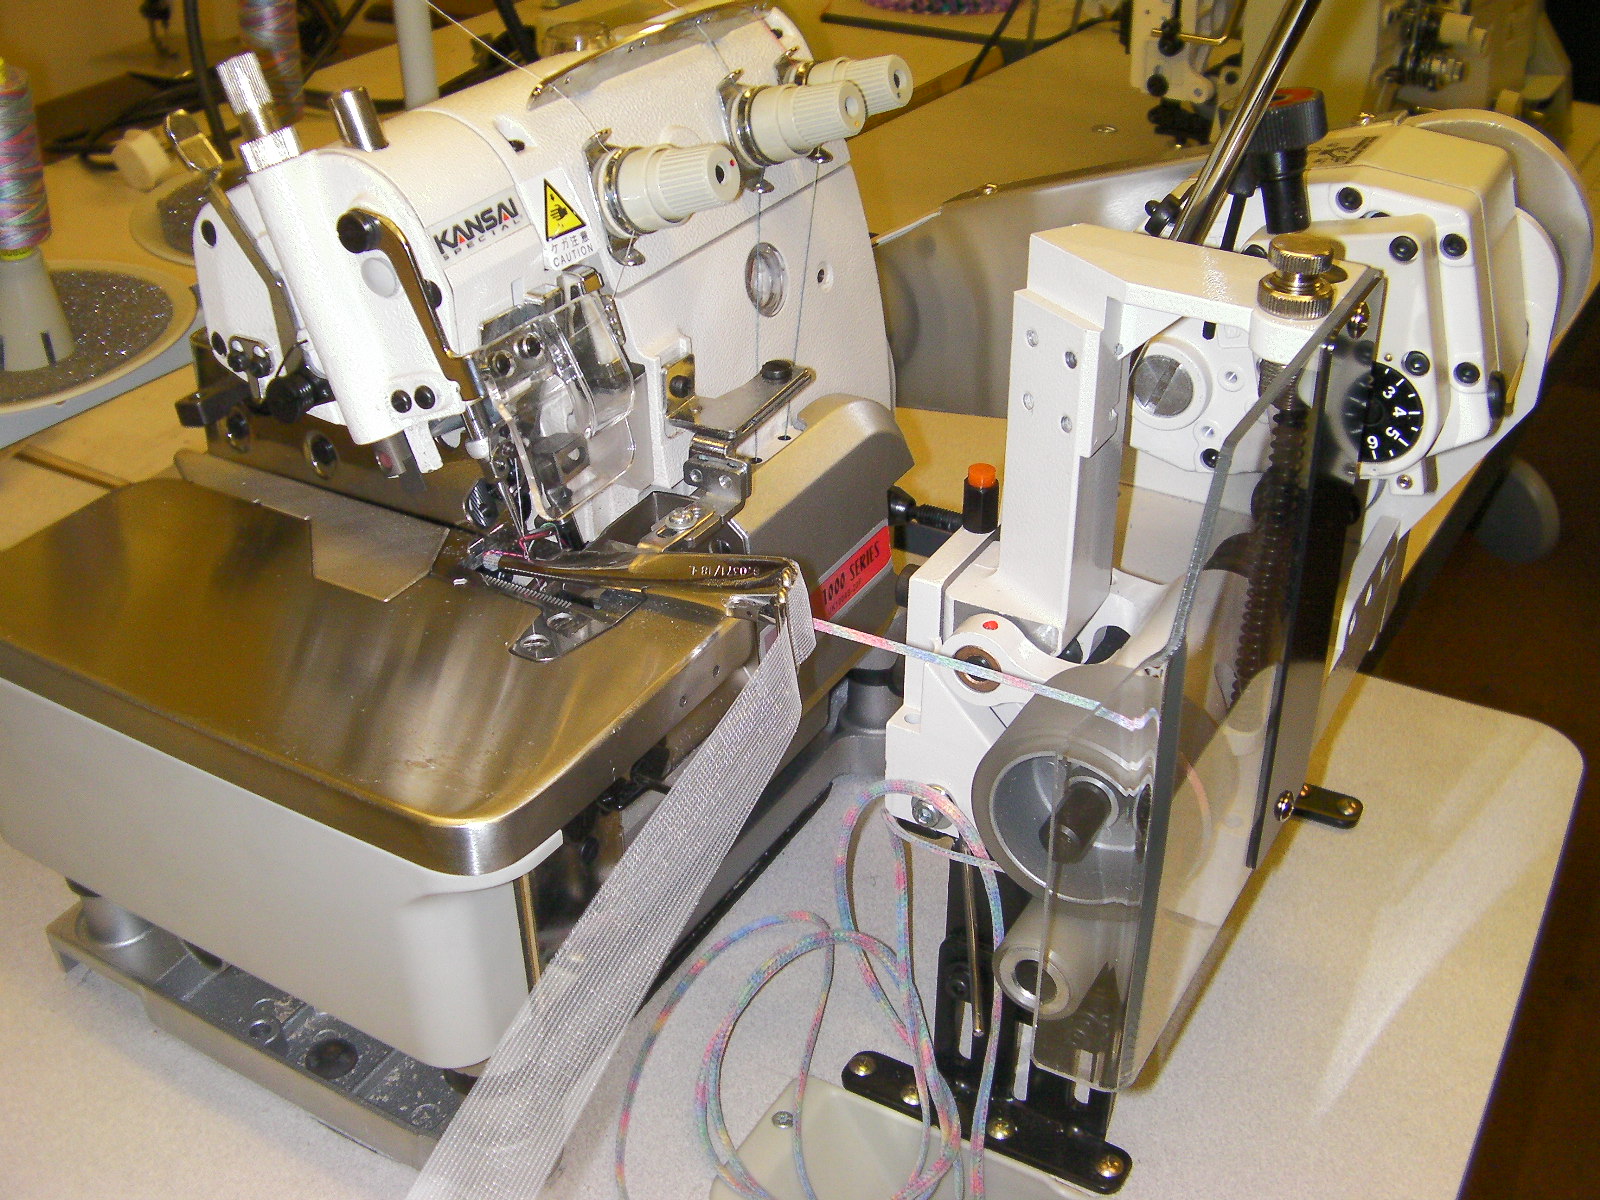 Kansai Special UK-1004-SP rouleaux máquina de coser